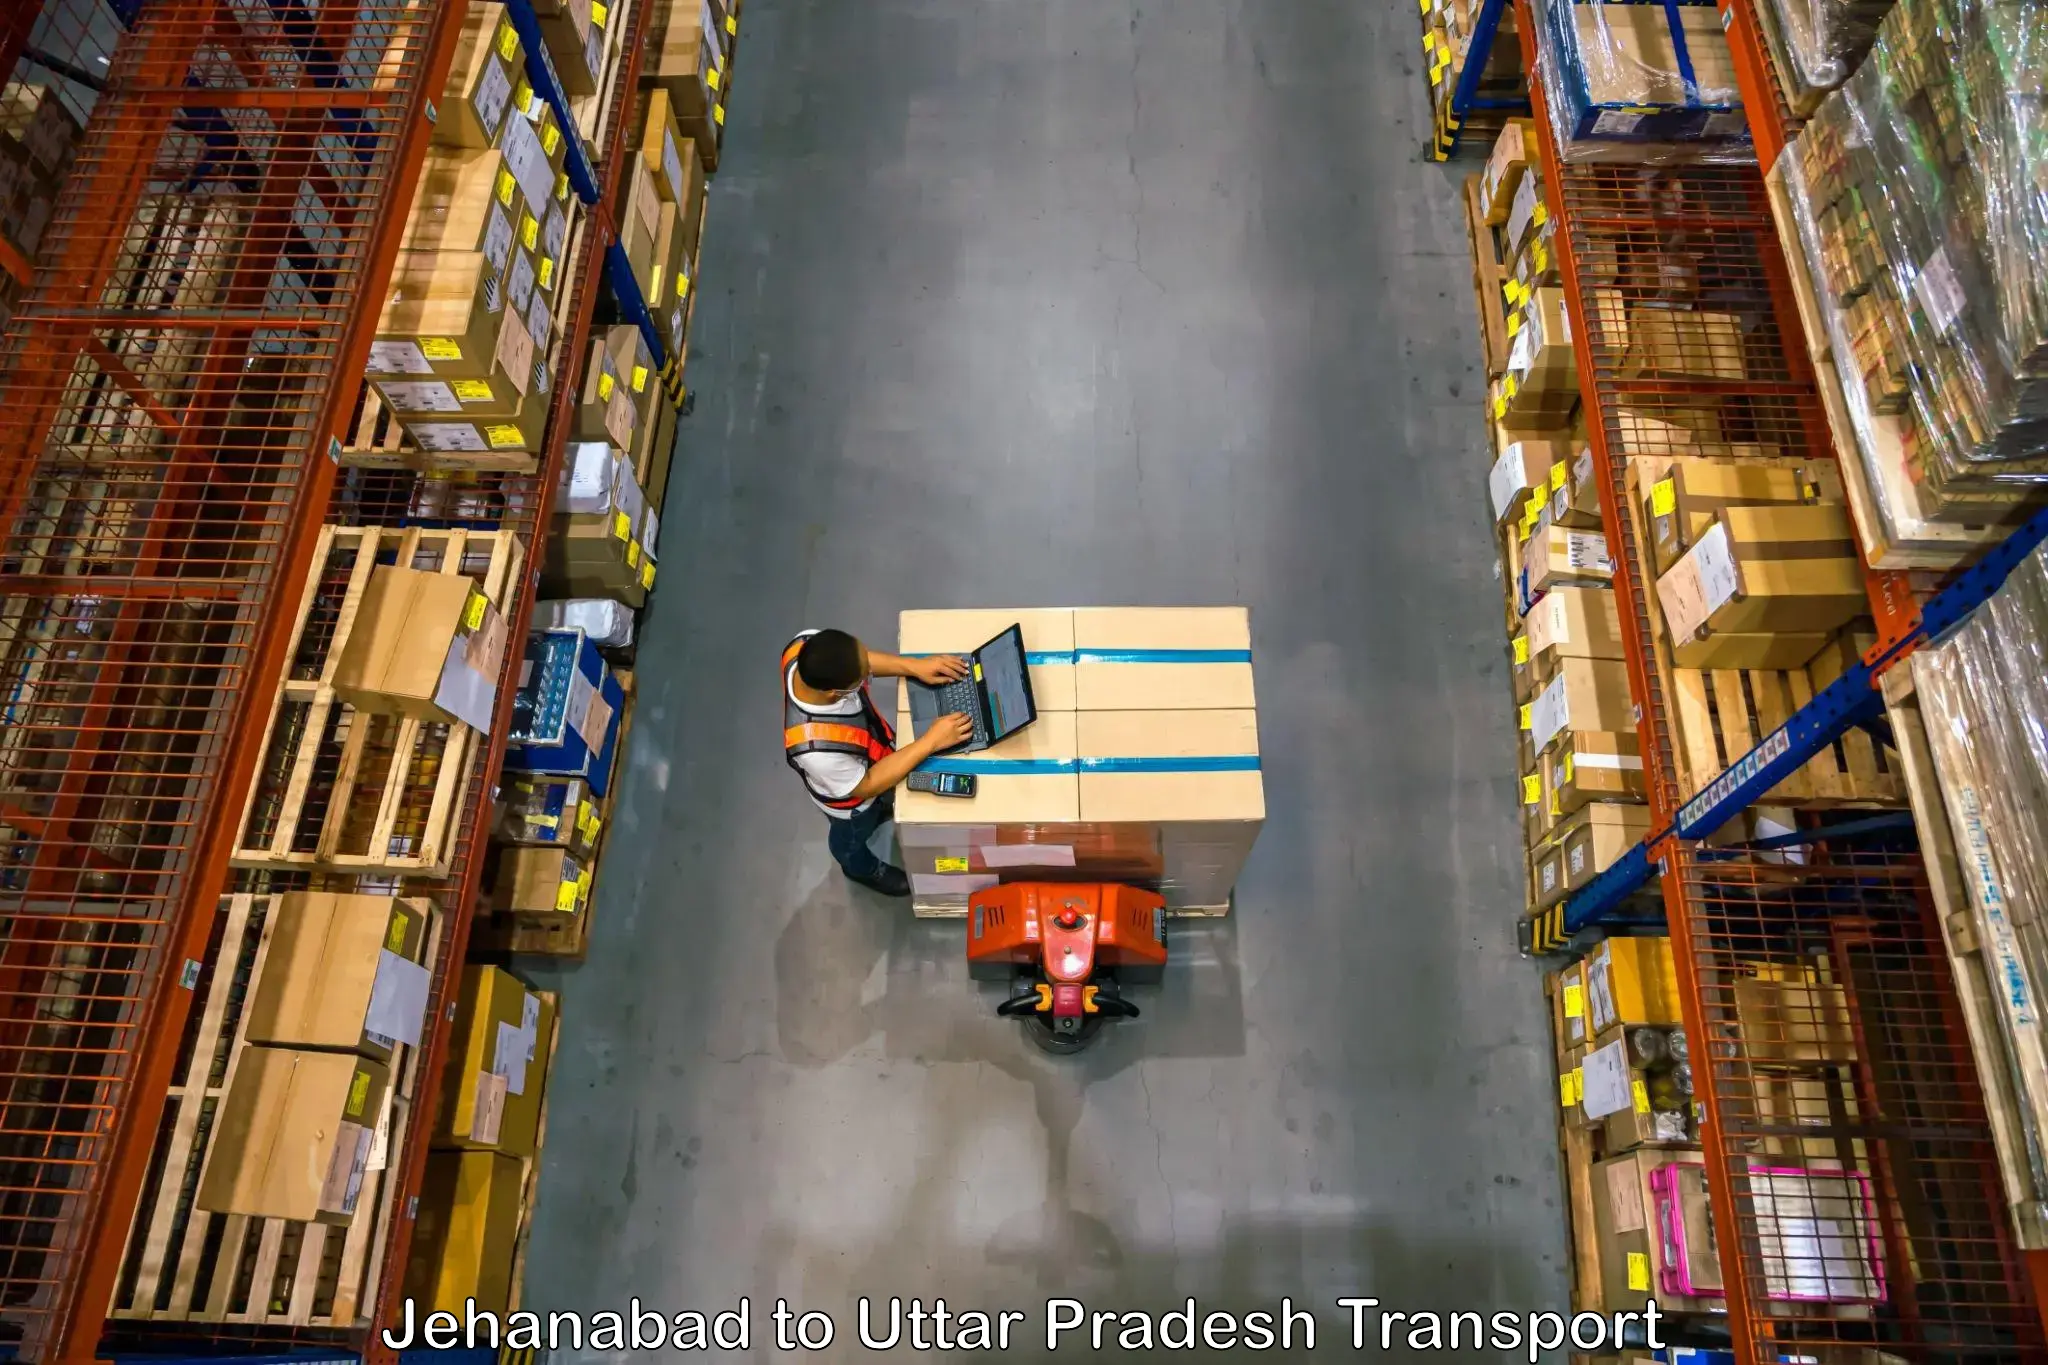 Shipping partner Jehanabad to Khurja